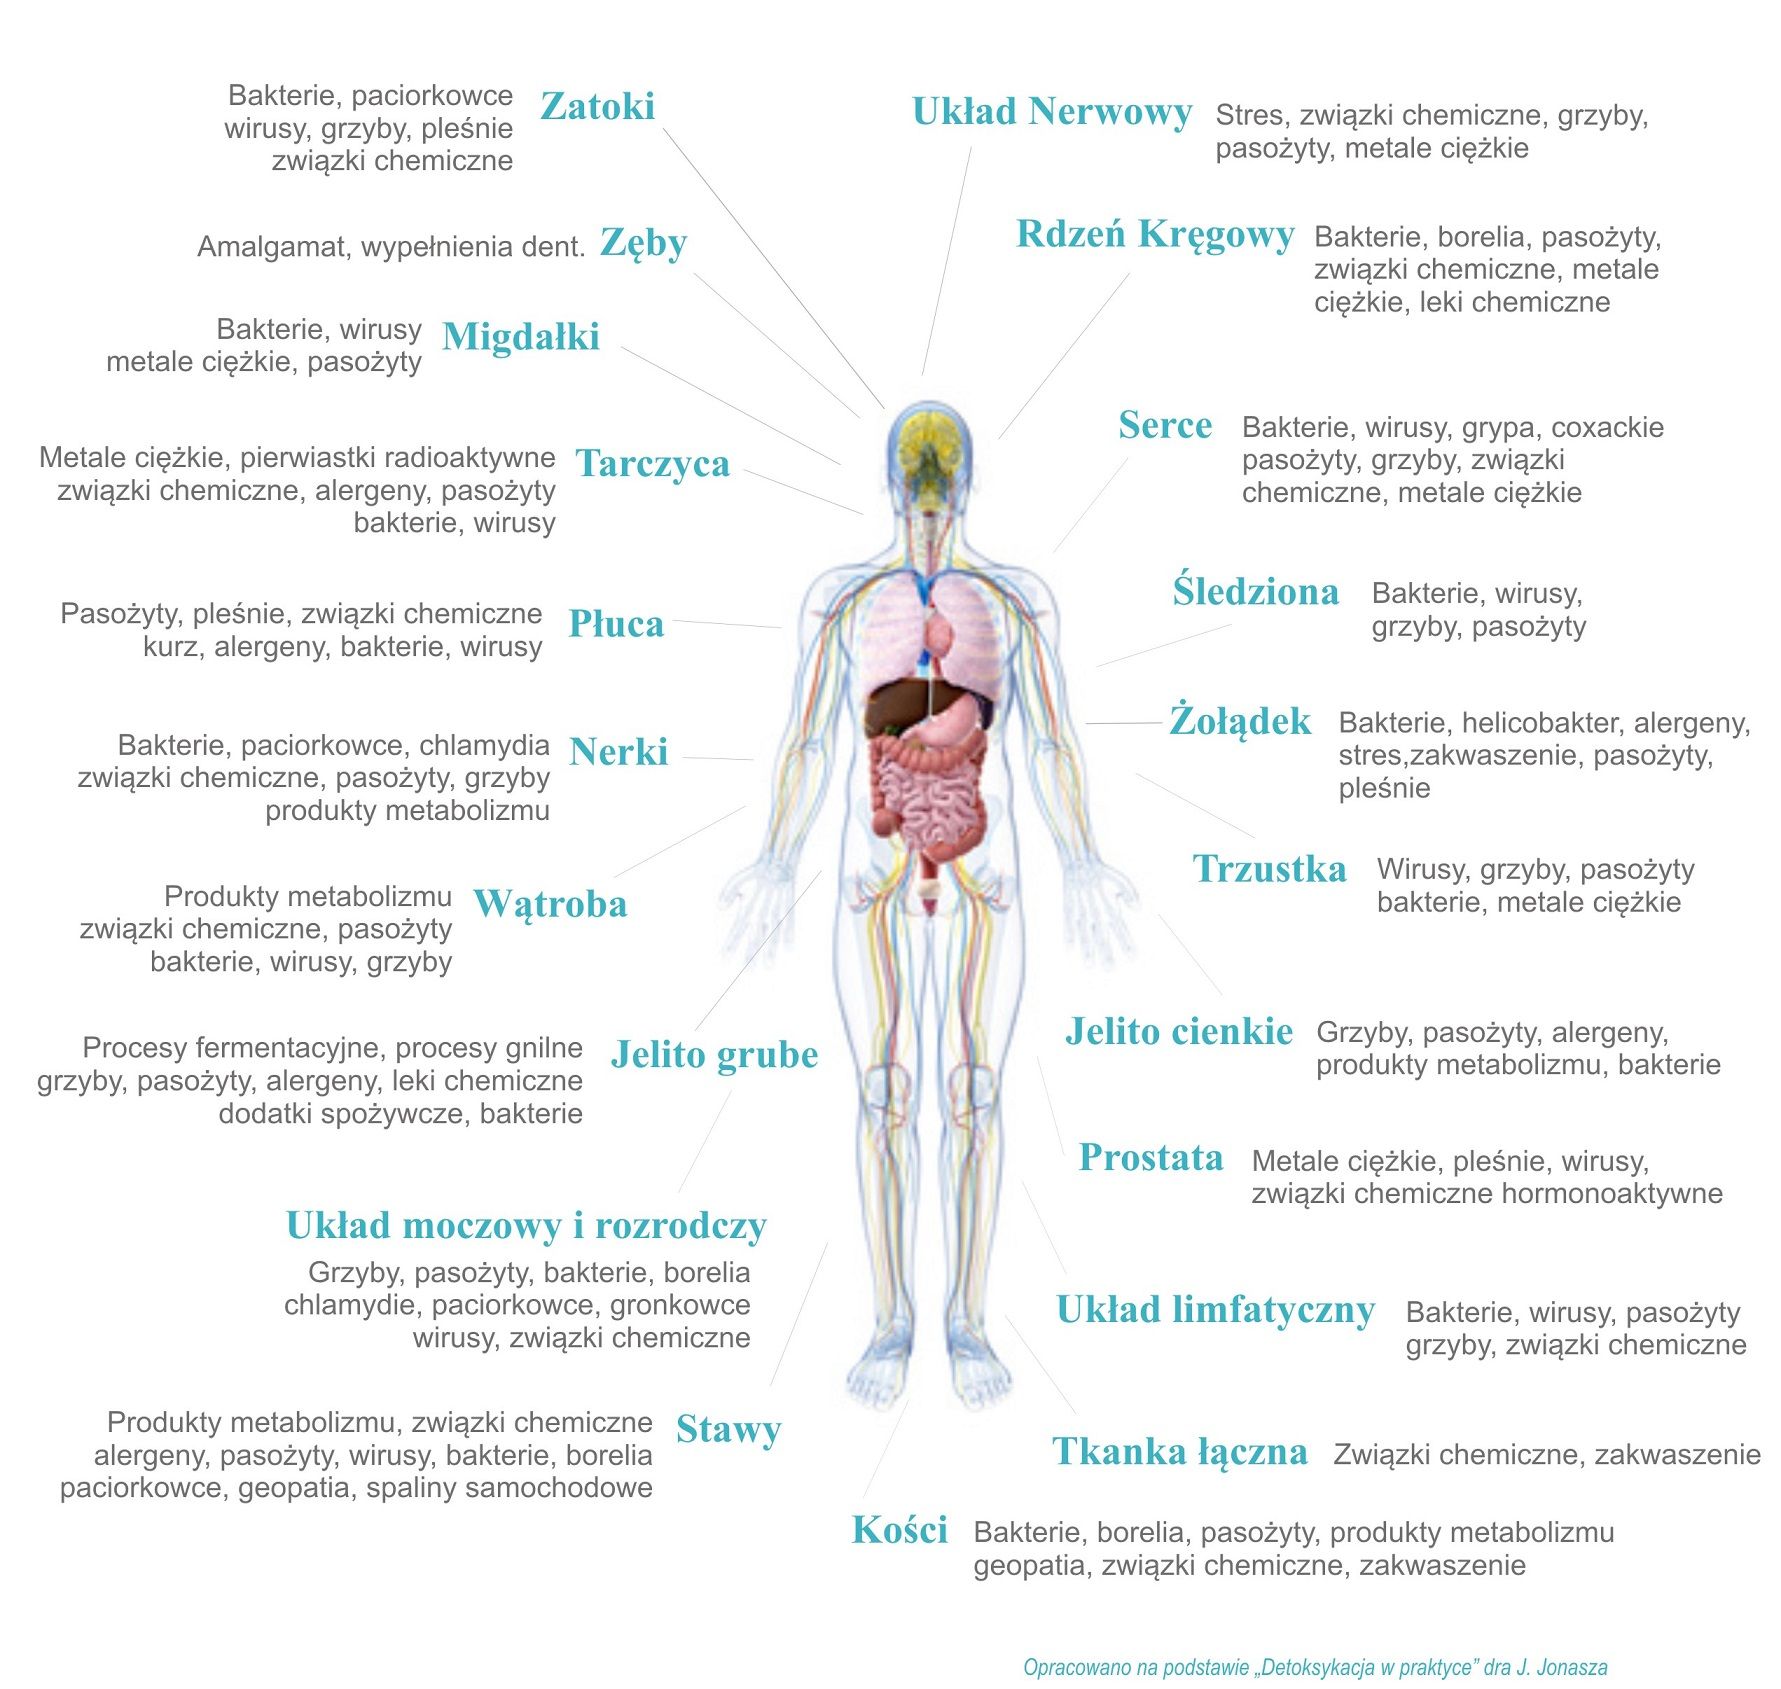 Schematyczny obraz pokazujący sylwetkę człowieka i wypisane narządy z toksynami i obciążaniami, jakie obciążają te narządy.